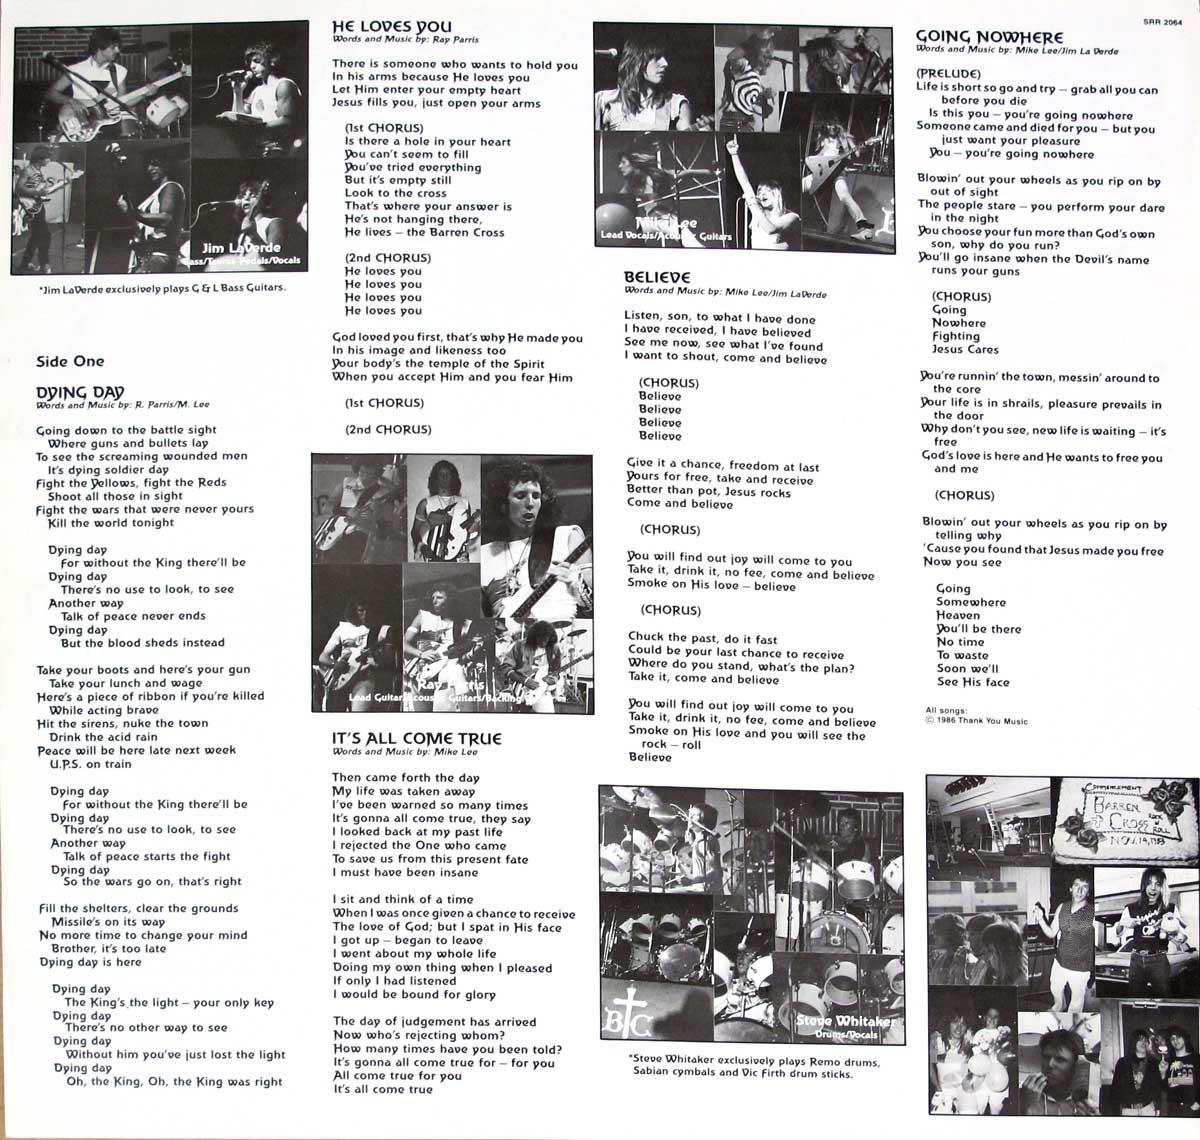 Lyrics printed on the Inner Sleeve   of "BARREN CROSS - Rock for the King" Album